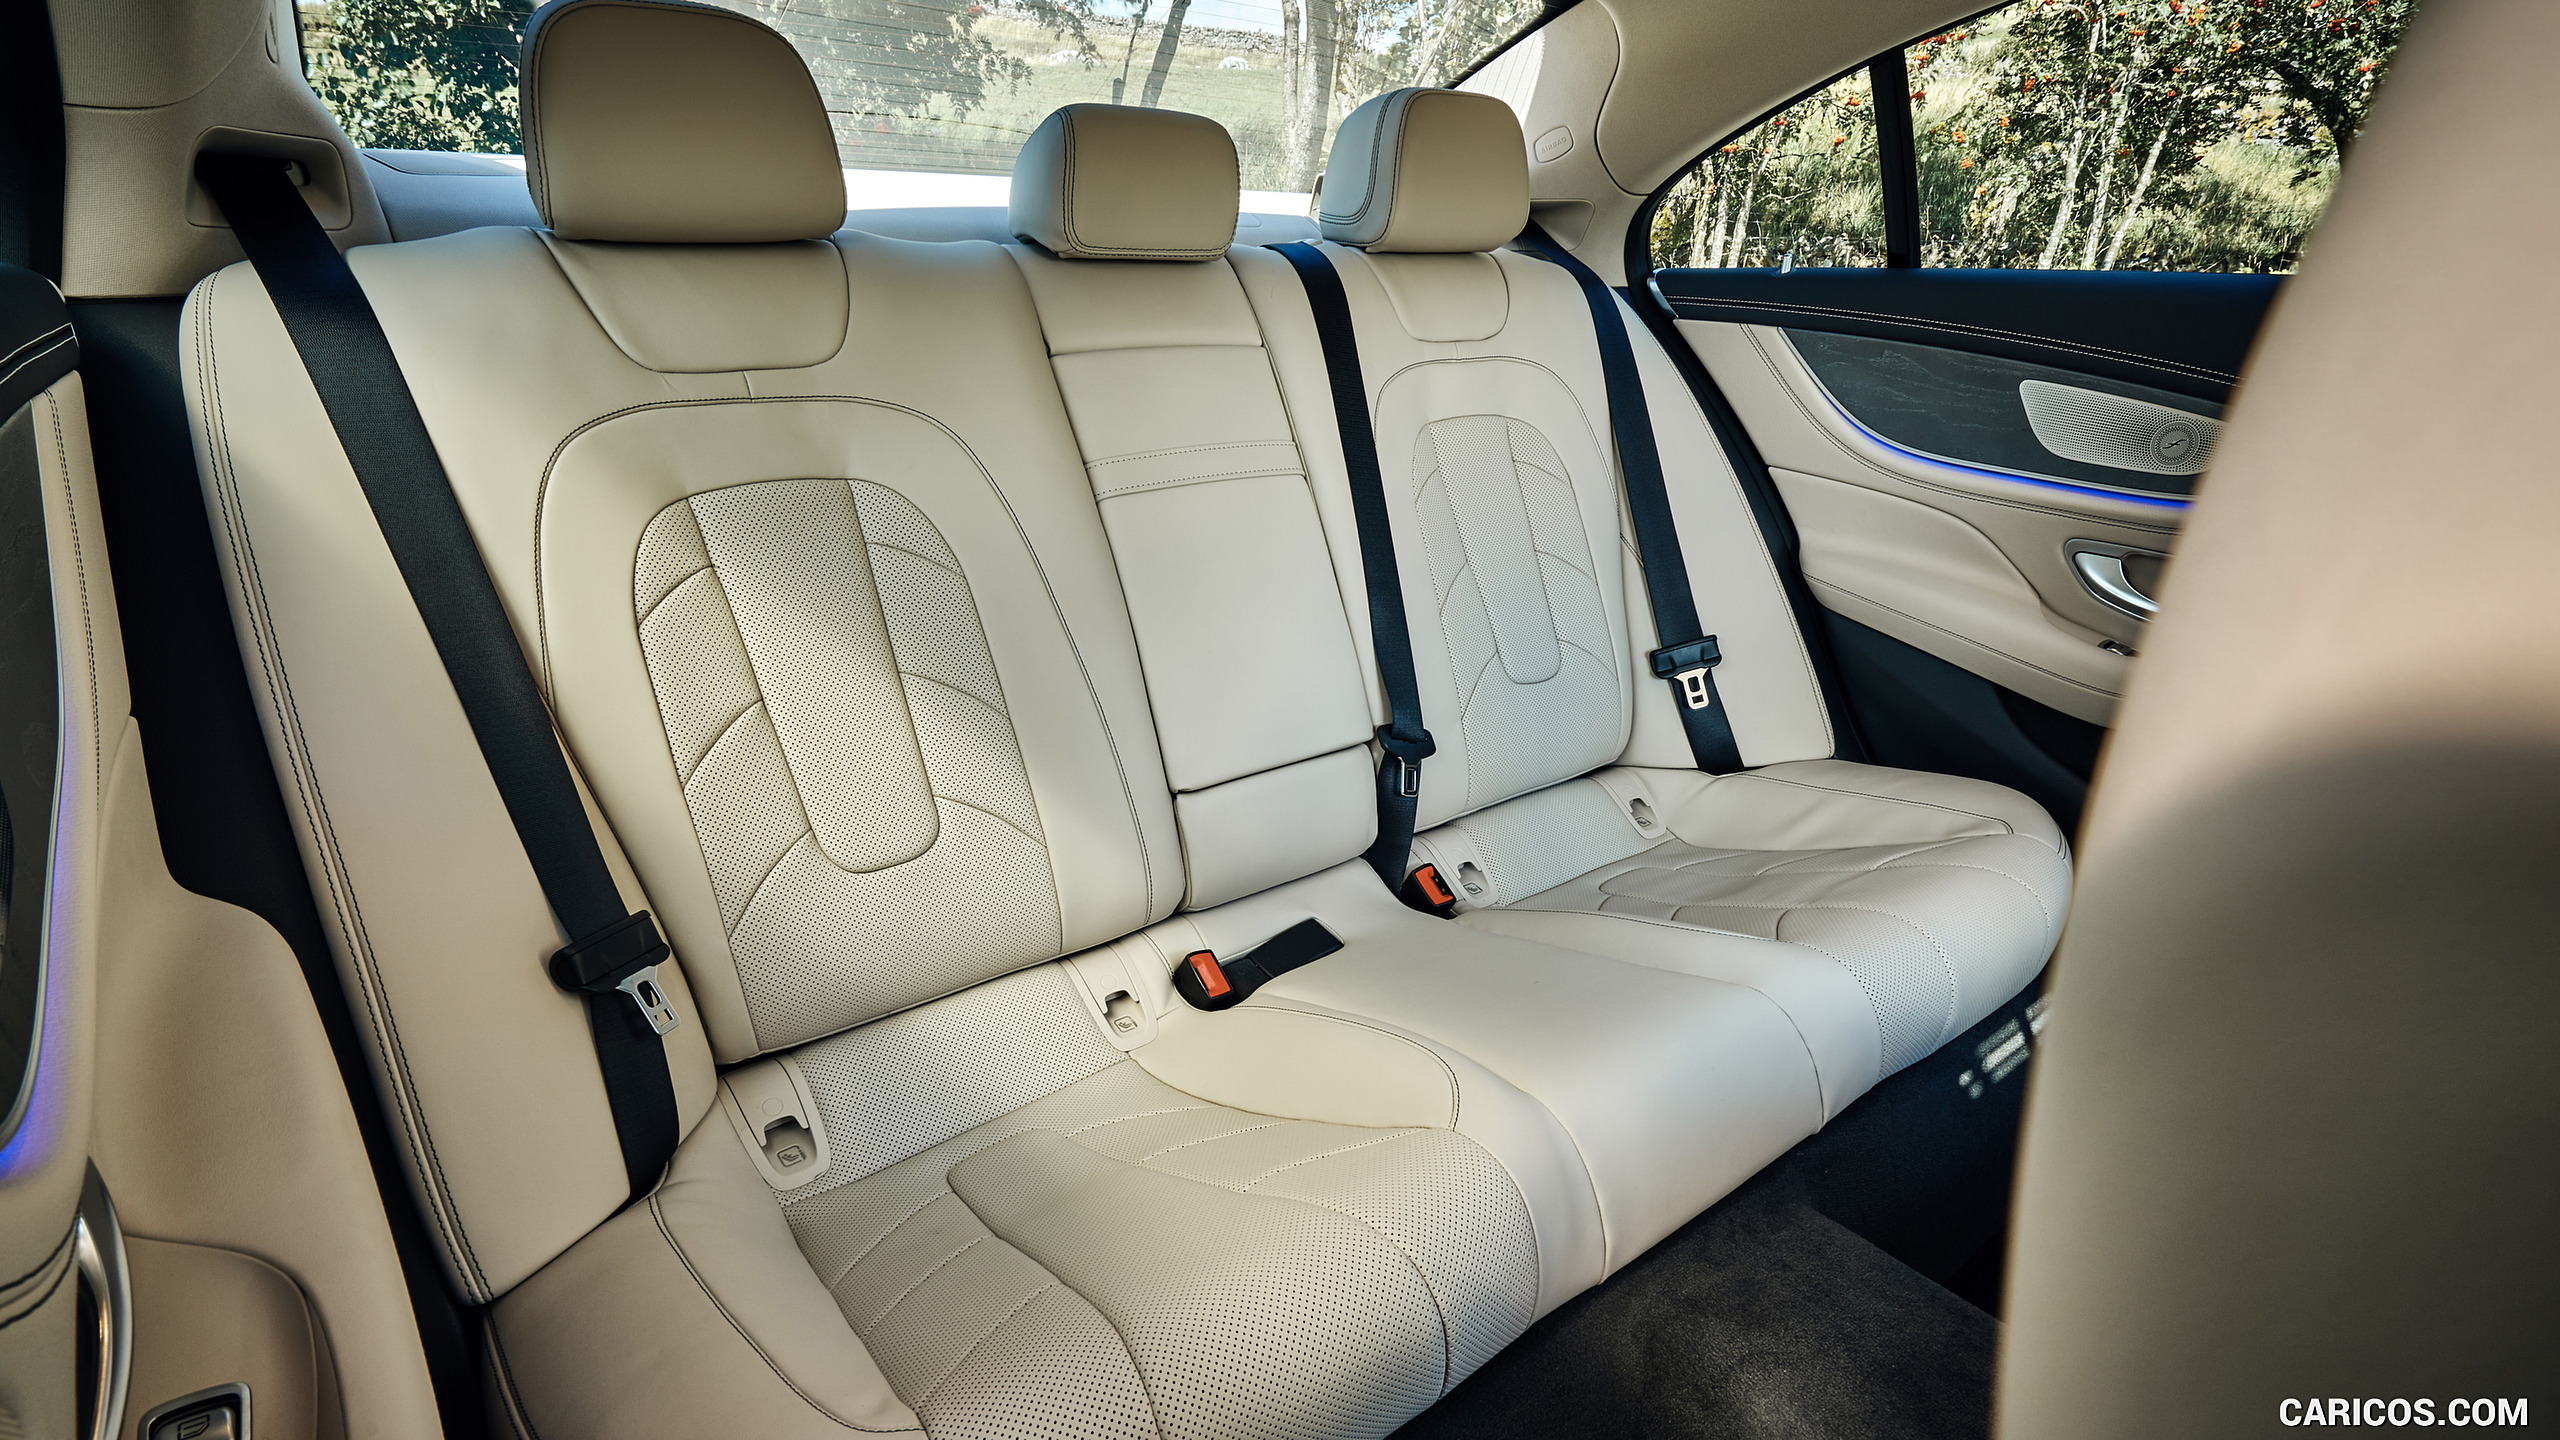 2019 Mercedes-AMG CLS 53 (UK-Spec) - Interior, Rear Seats, #98 of 98